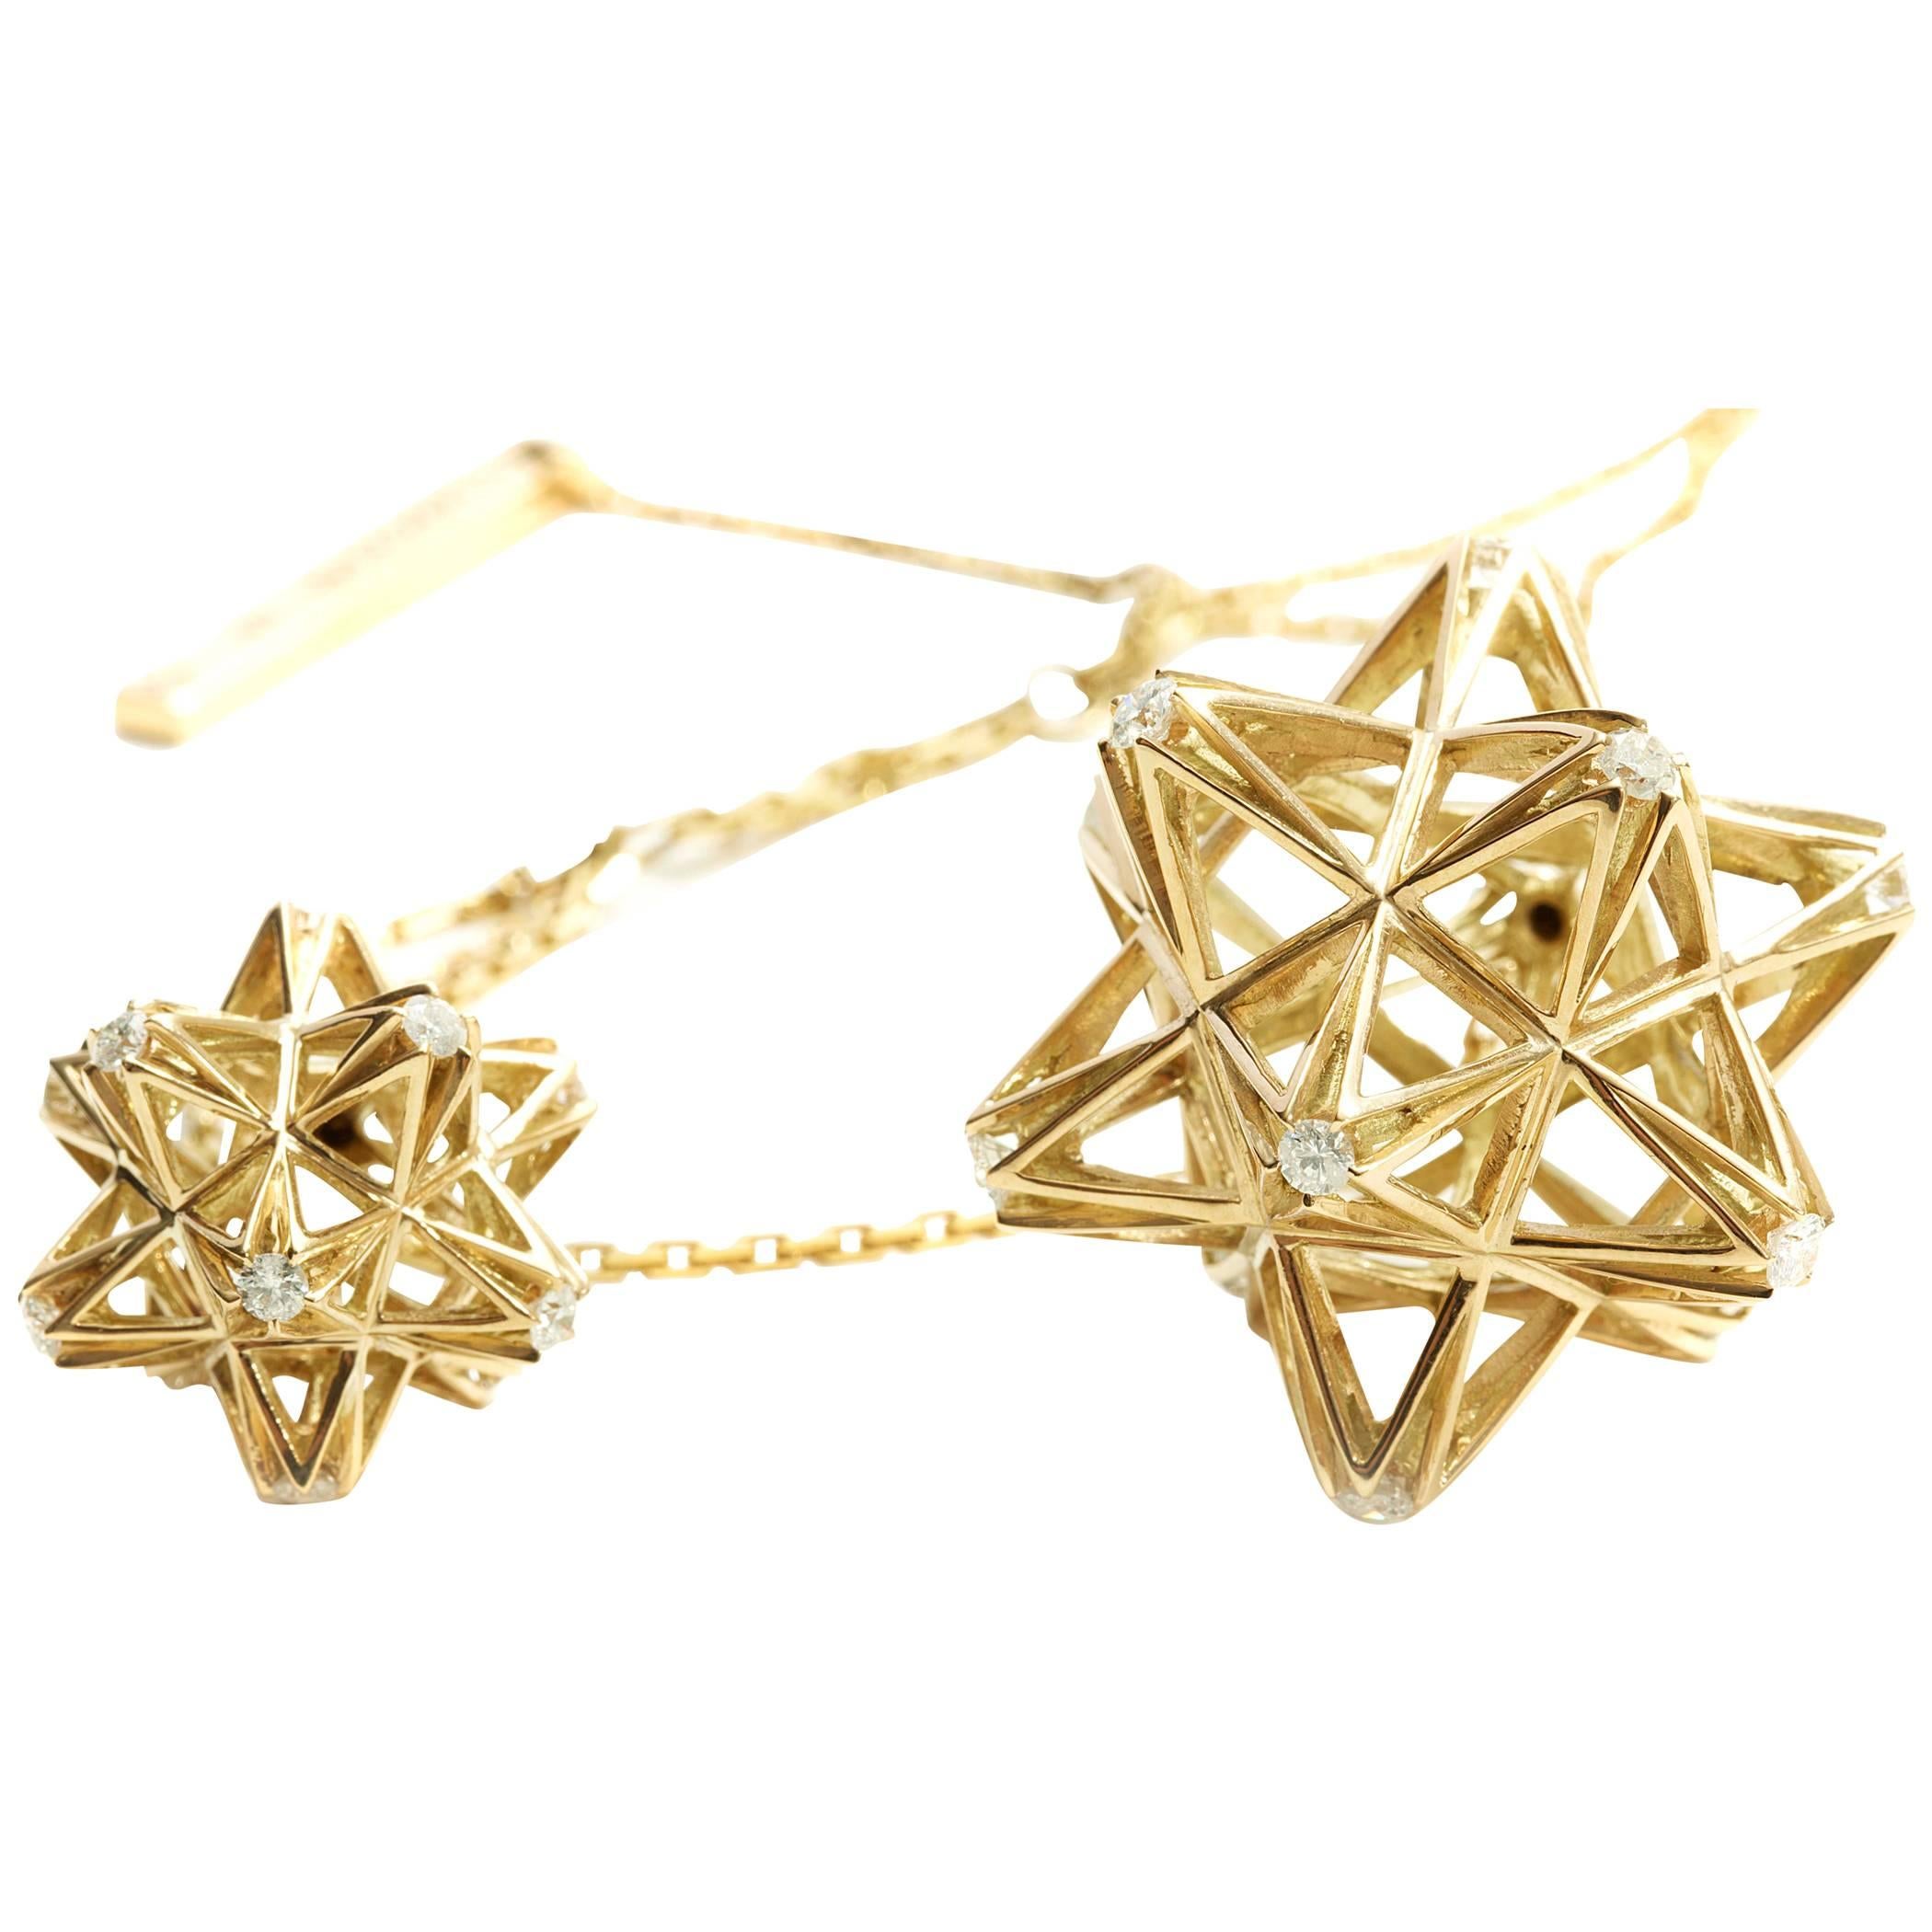 Collier pendentif cadre en or 18 carats et diamants